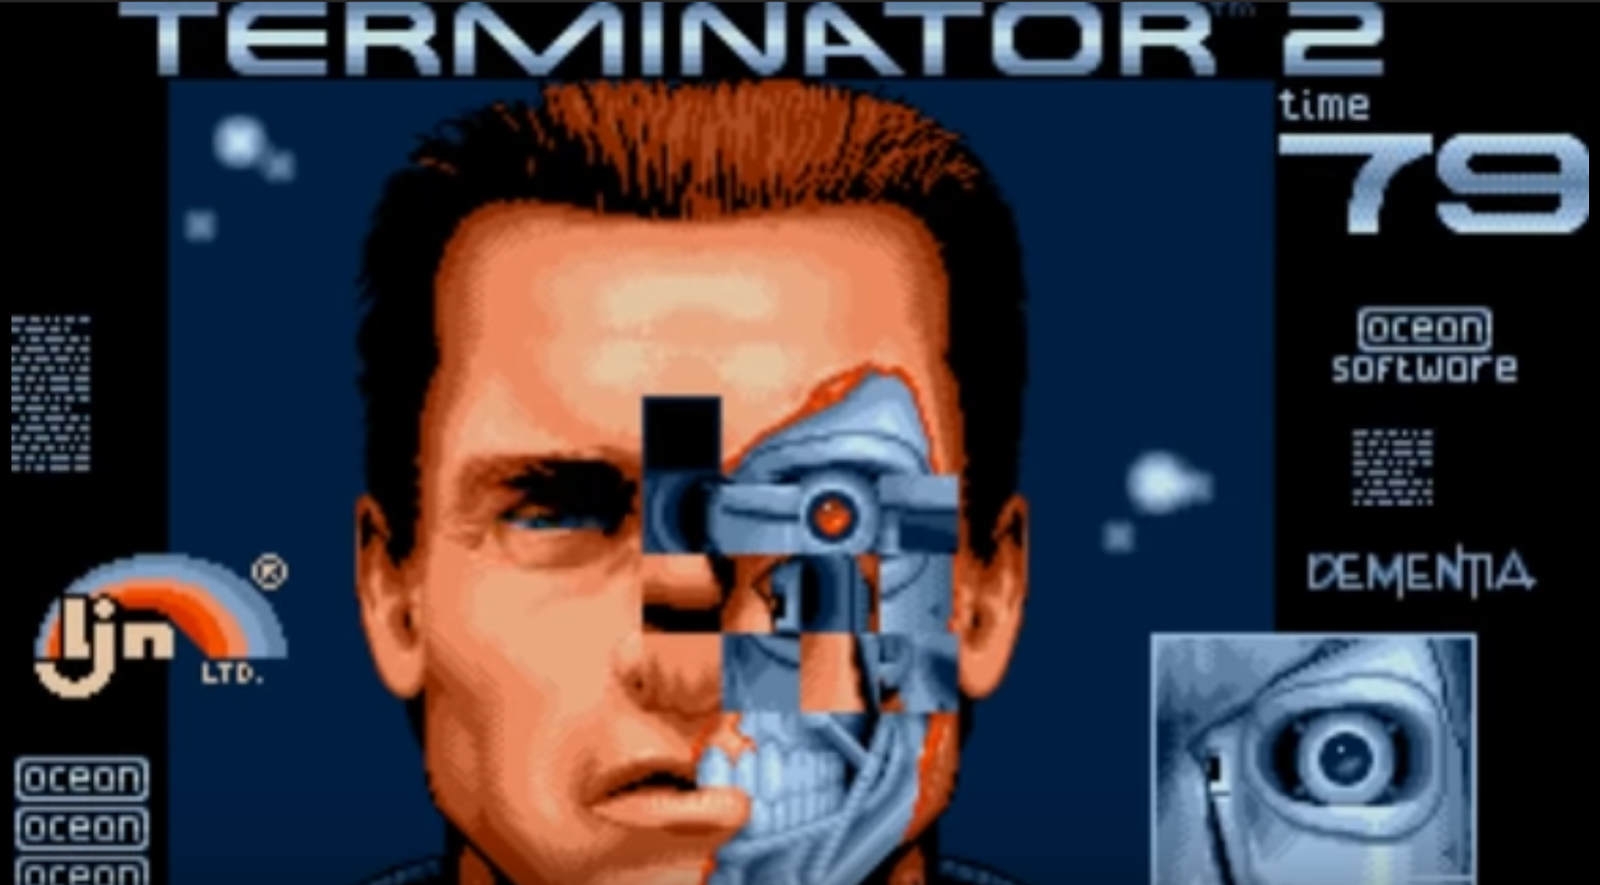 Игры terminator 2. Терминатор 2 игра. The Terminator игра 1991. Терминатор игра сега. Terminator 1991 dos game.